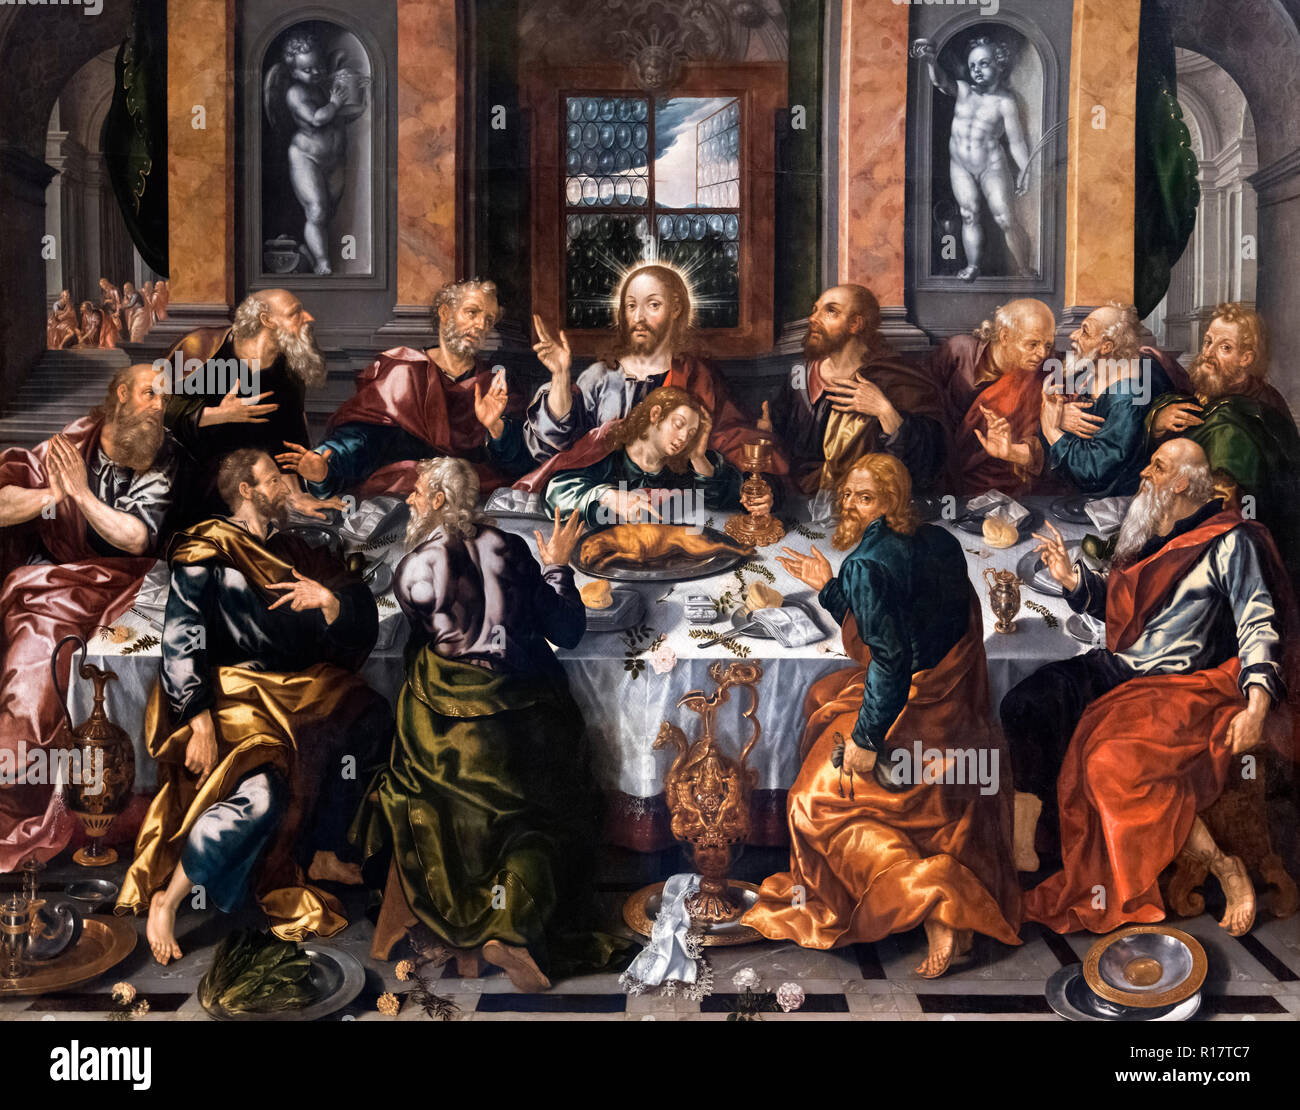 https://c8.alamy.com/comp/R17TC7/the-last-supper-la-cena-sagrada-by-alonso-vzquez-1565-1608-oil-on-canvas-c-1588-R17TC7.jpg